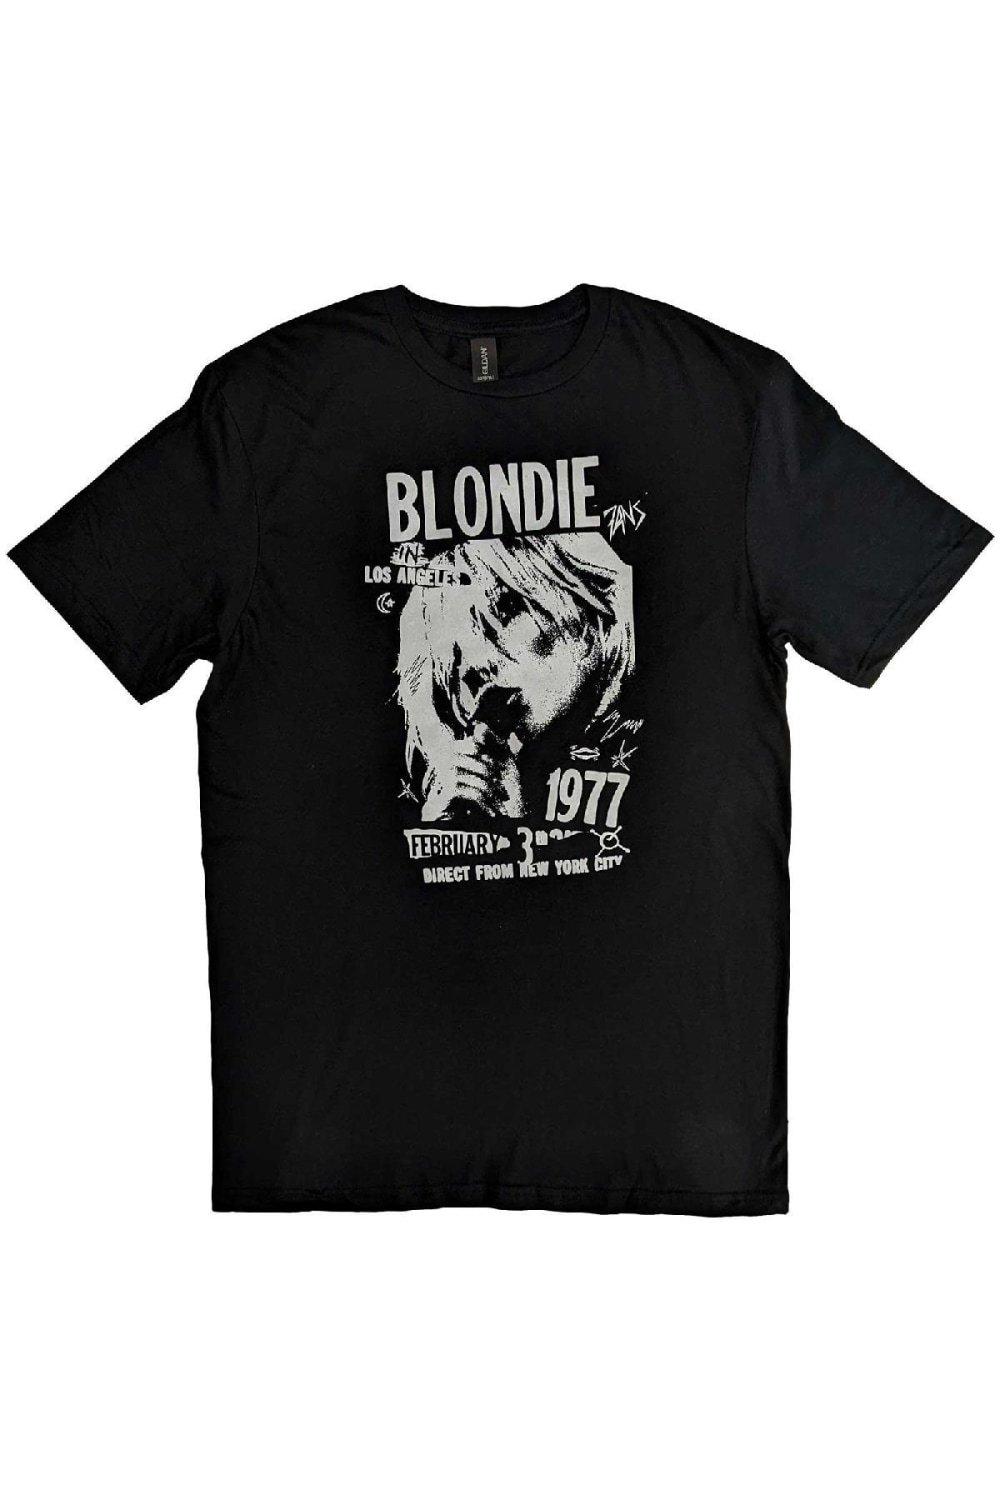 Винтажная хлопковая футболка 1977 года Blondie, черный лицензия на убийство том 2 цифровая версия цифровая версия